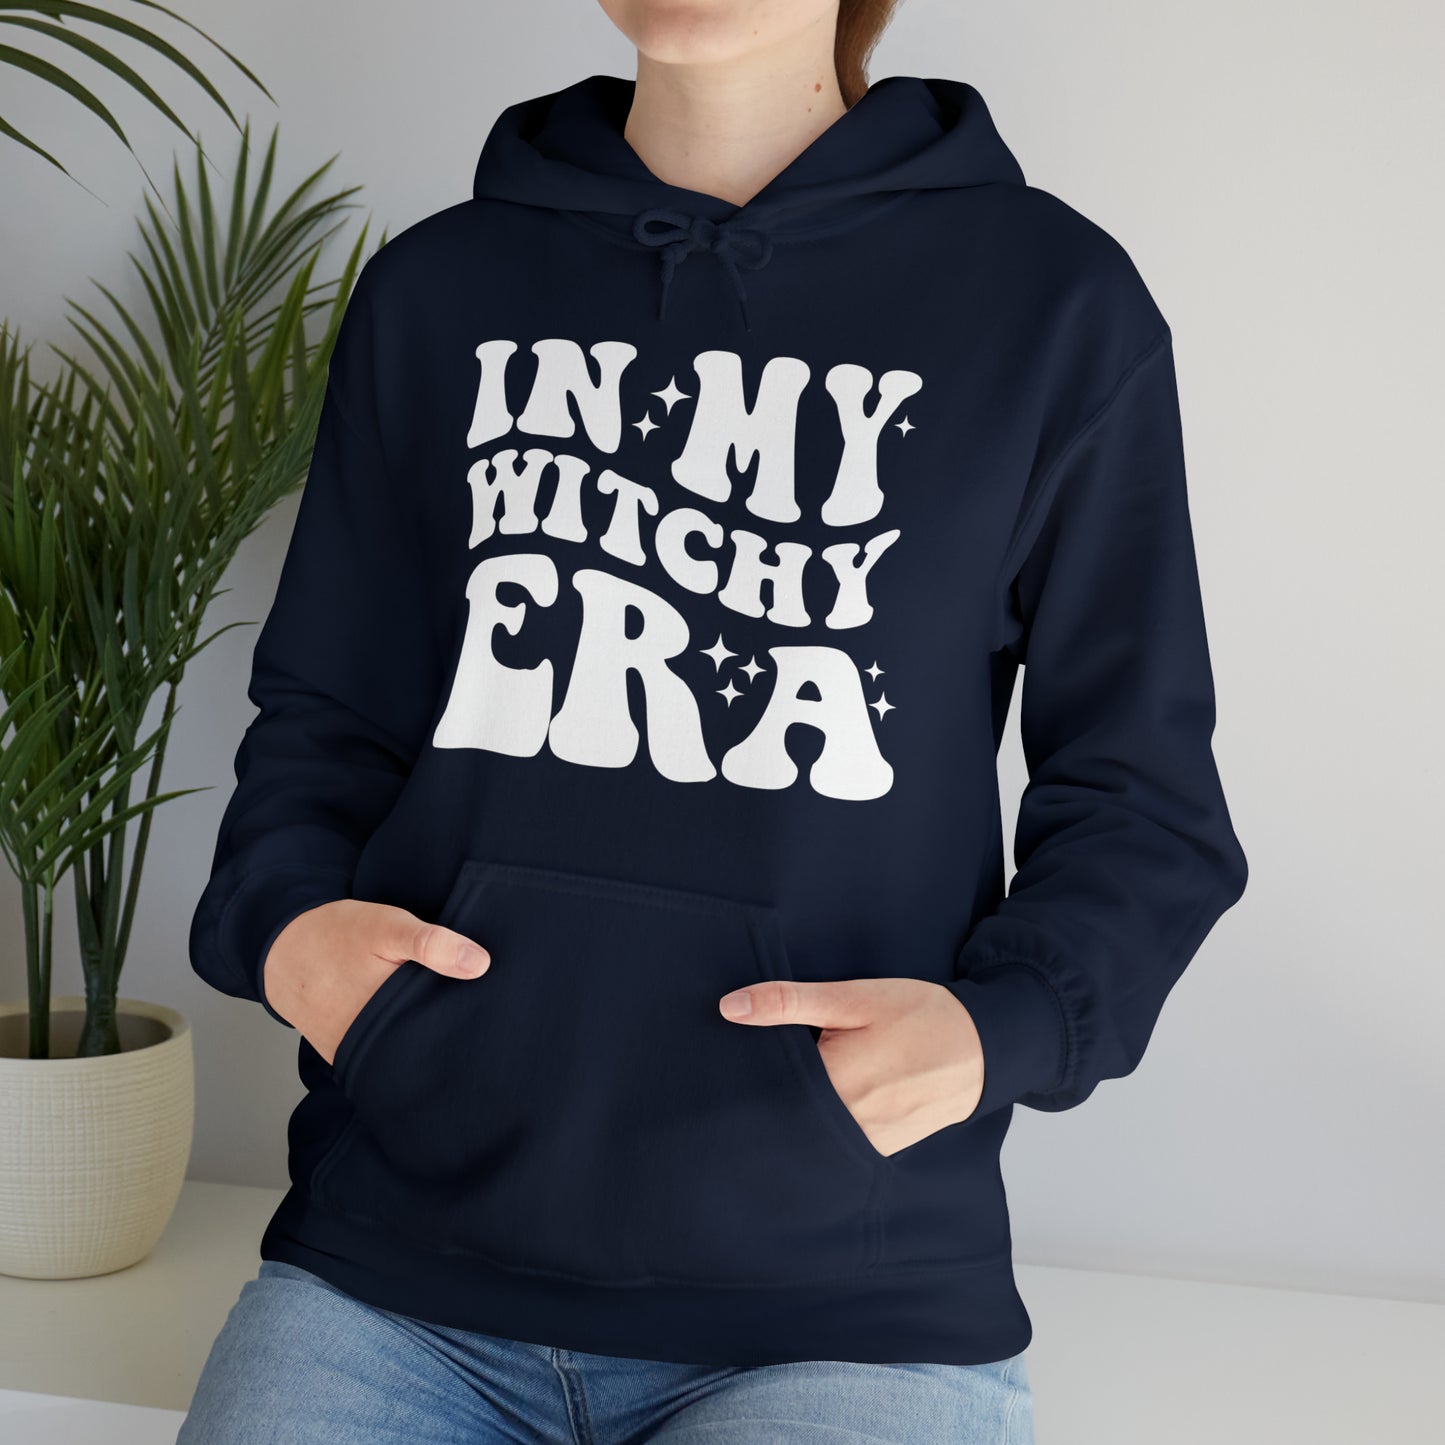 Unisex Heavy Blend™ Hooded Sweatshirt - Witchy Era